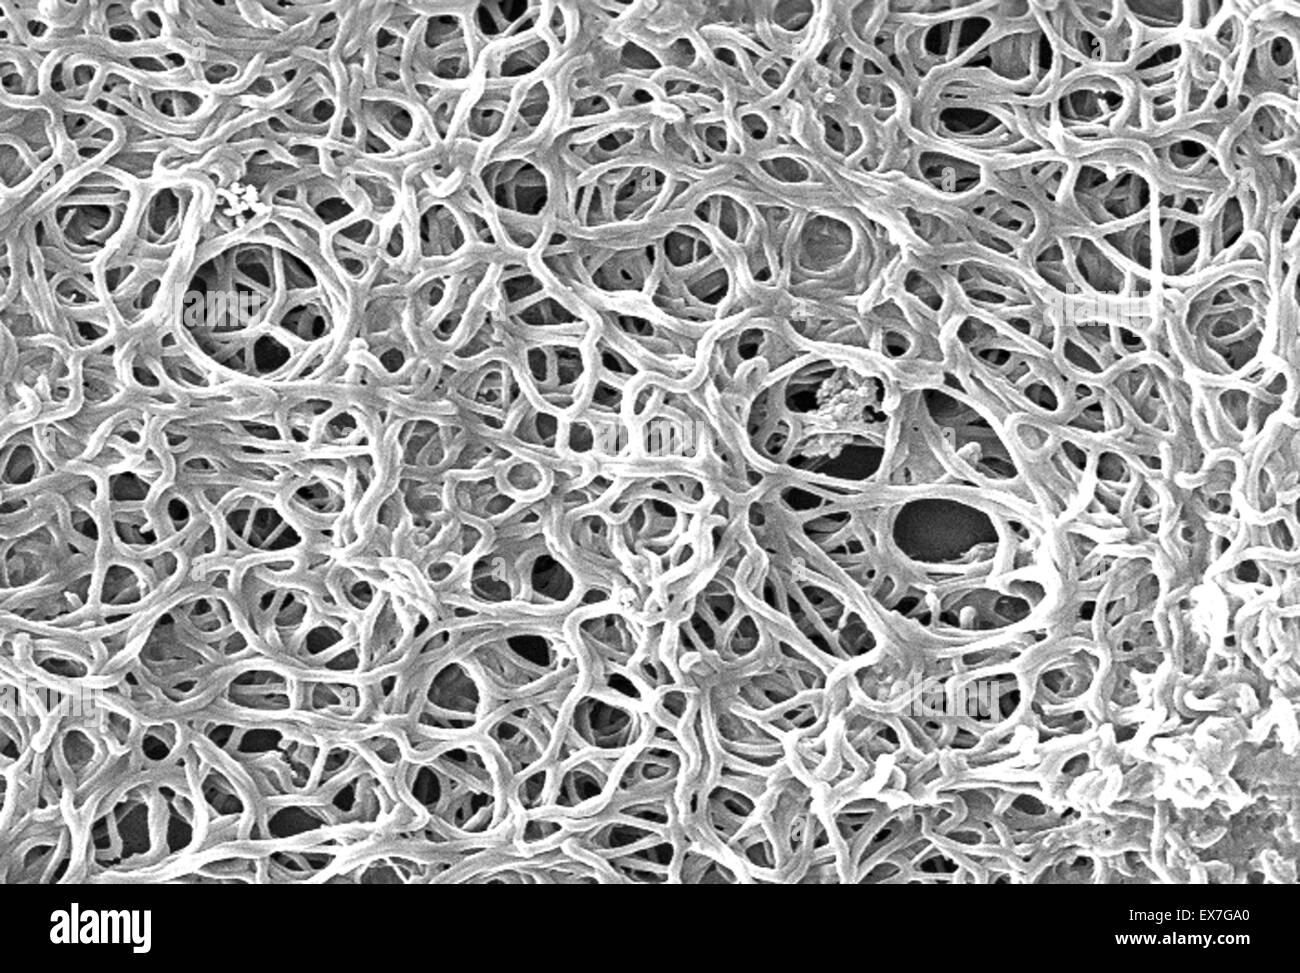 Micrographie électronique à balayage de la bactérie spirochète Borrelia burgdorferi Banque D'Images